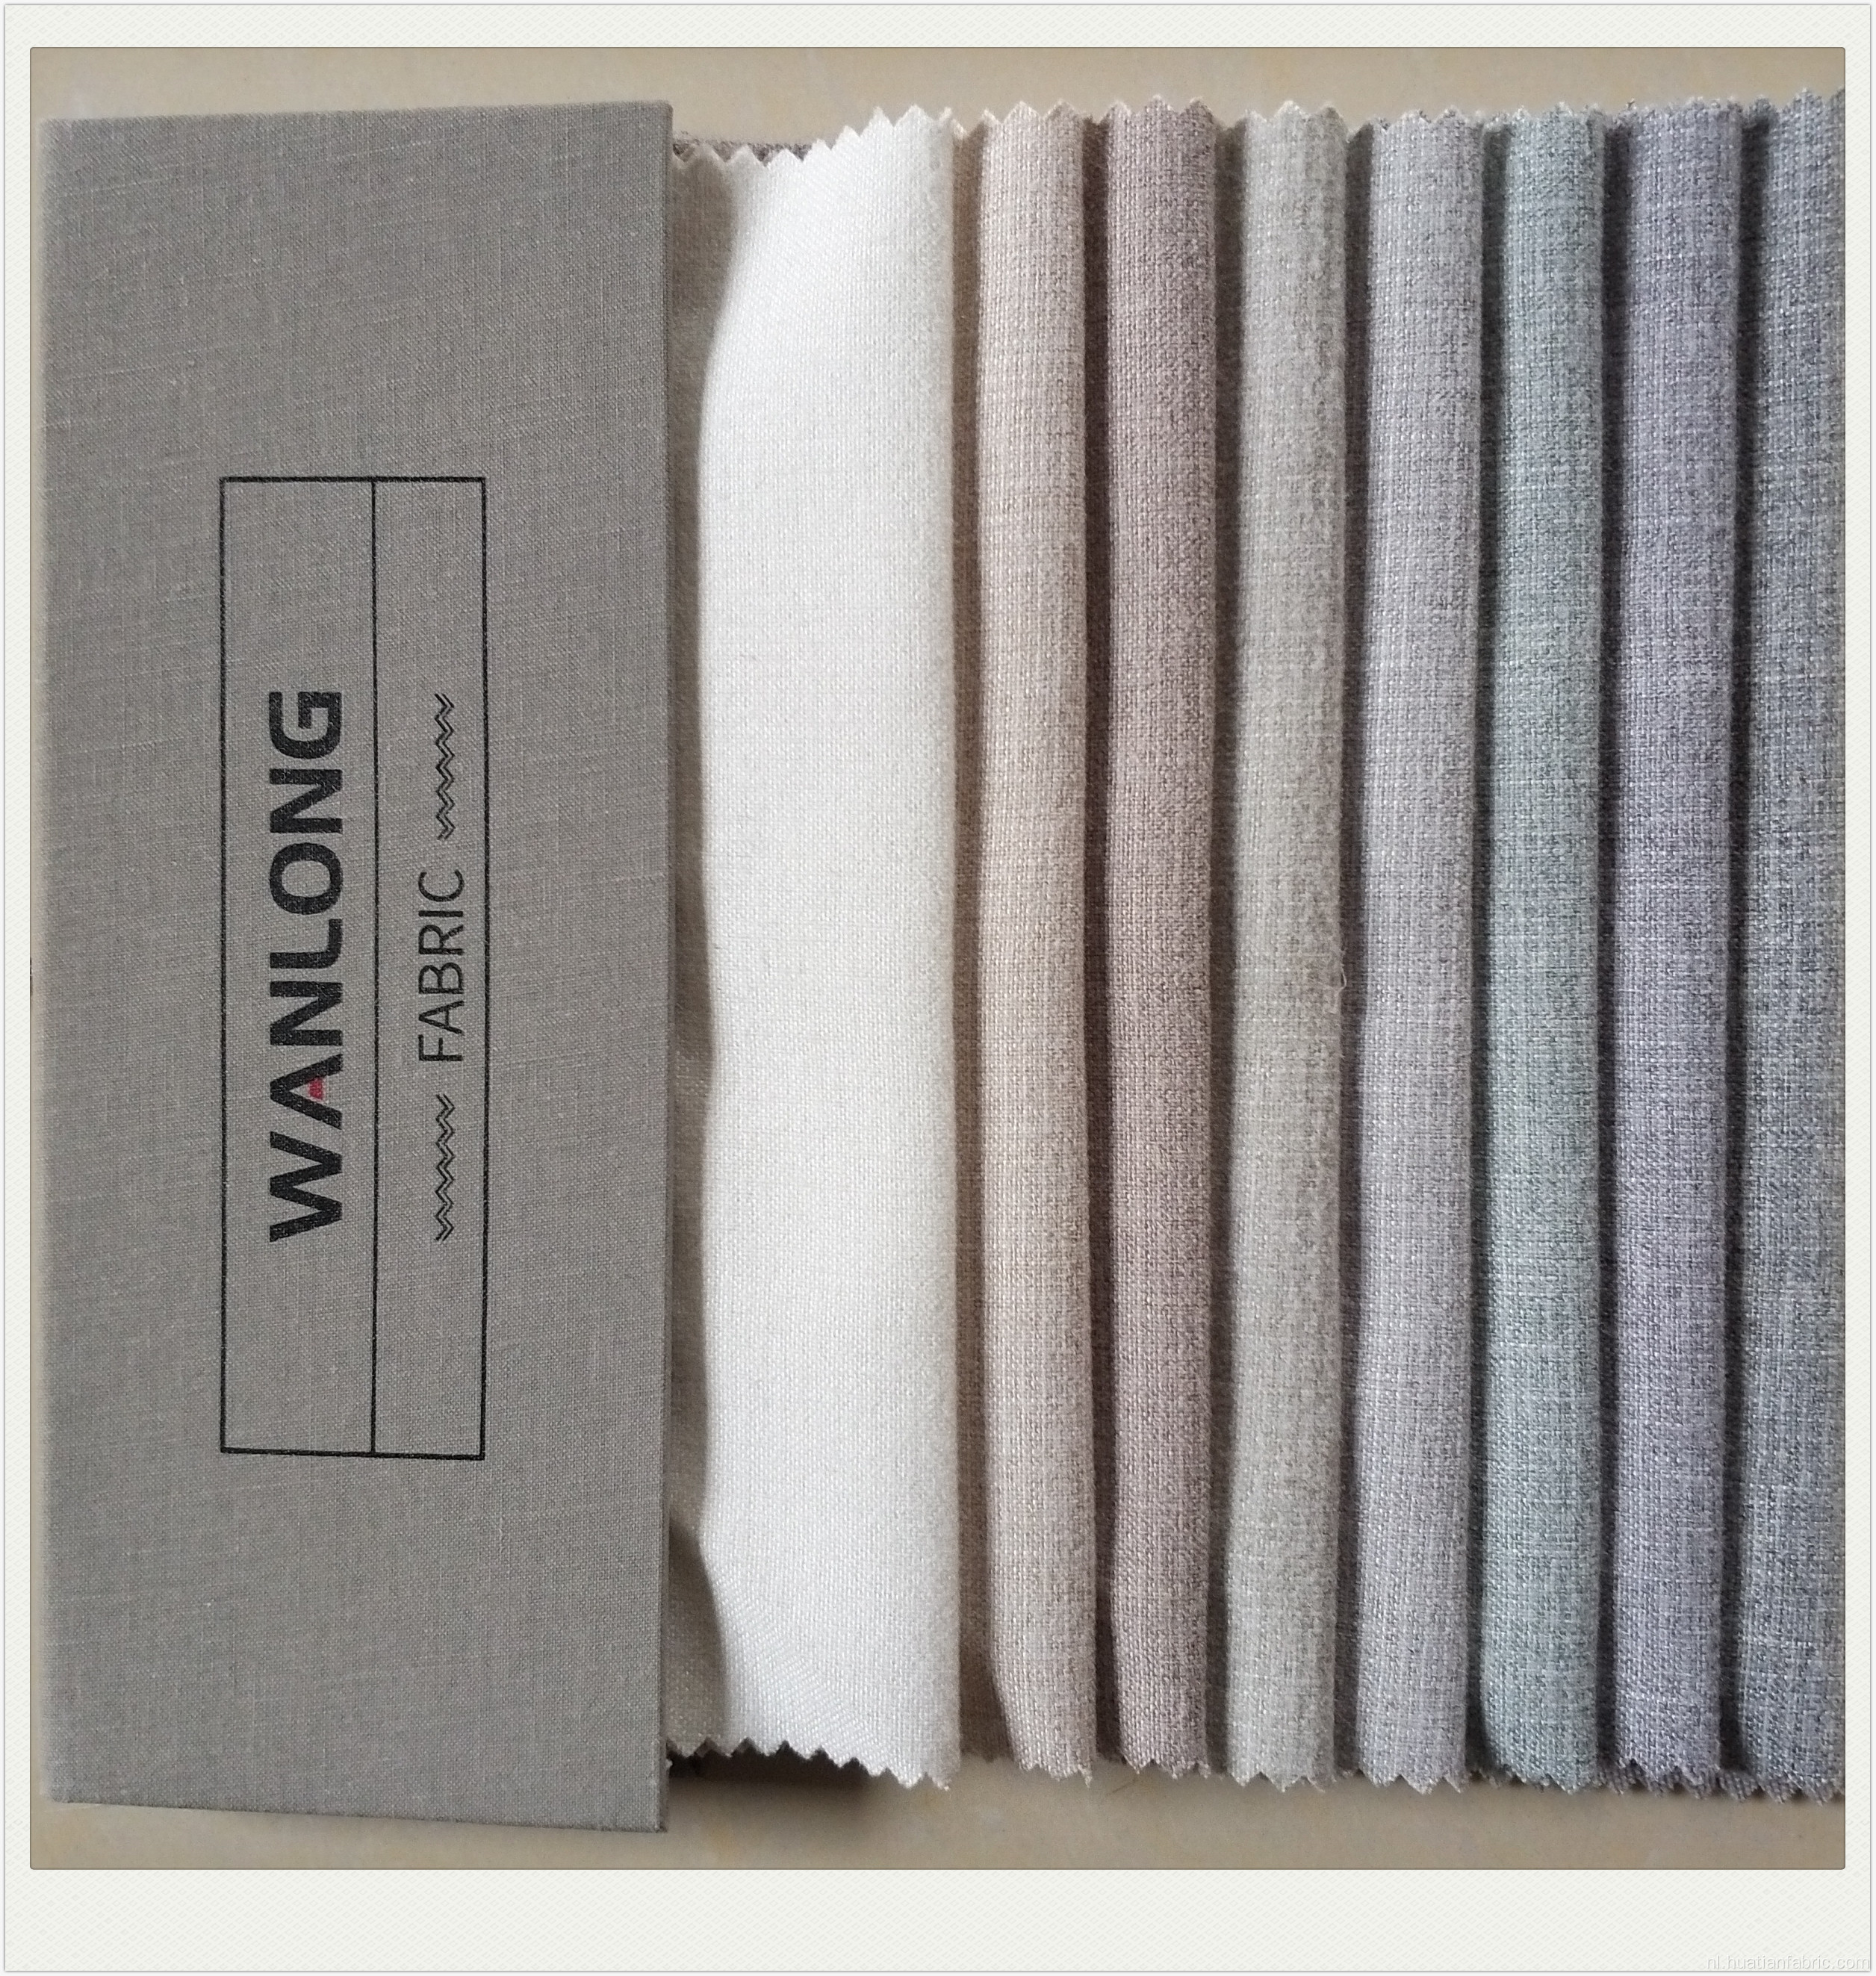 Kenaf Sofa-stof voor thuis textielbekledingsgebruik